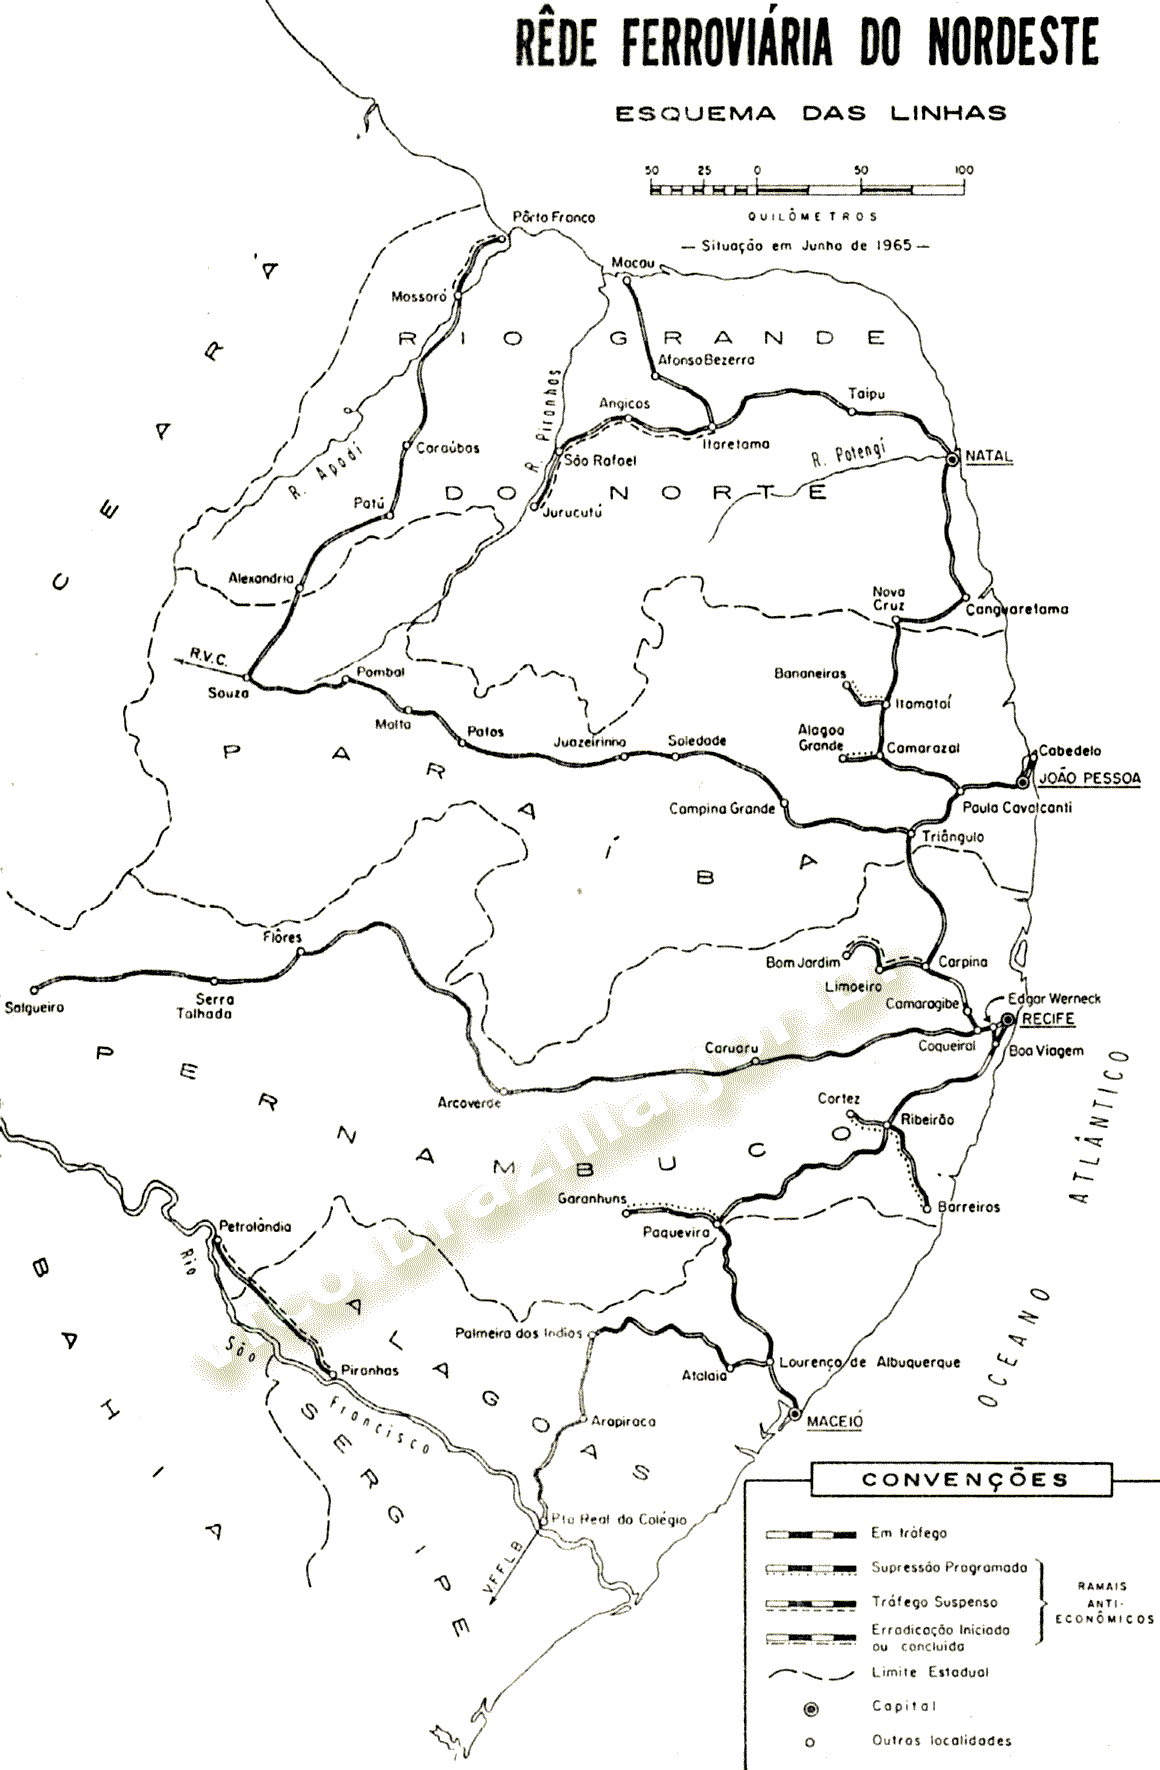 Mapa dos trilhos da RFN - Rede Ferroviária do Nordeste, da RFFSA - Rede Ferroviária Federal, em 1965